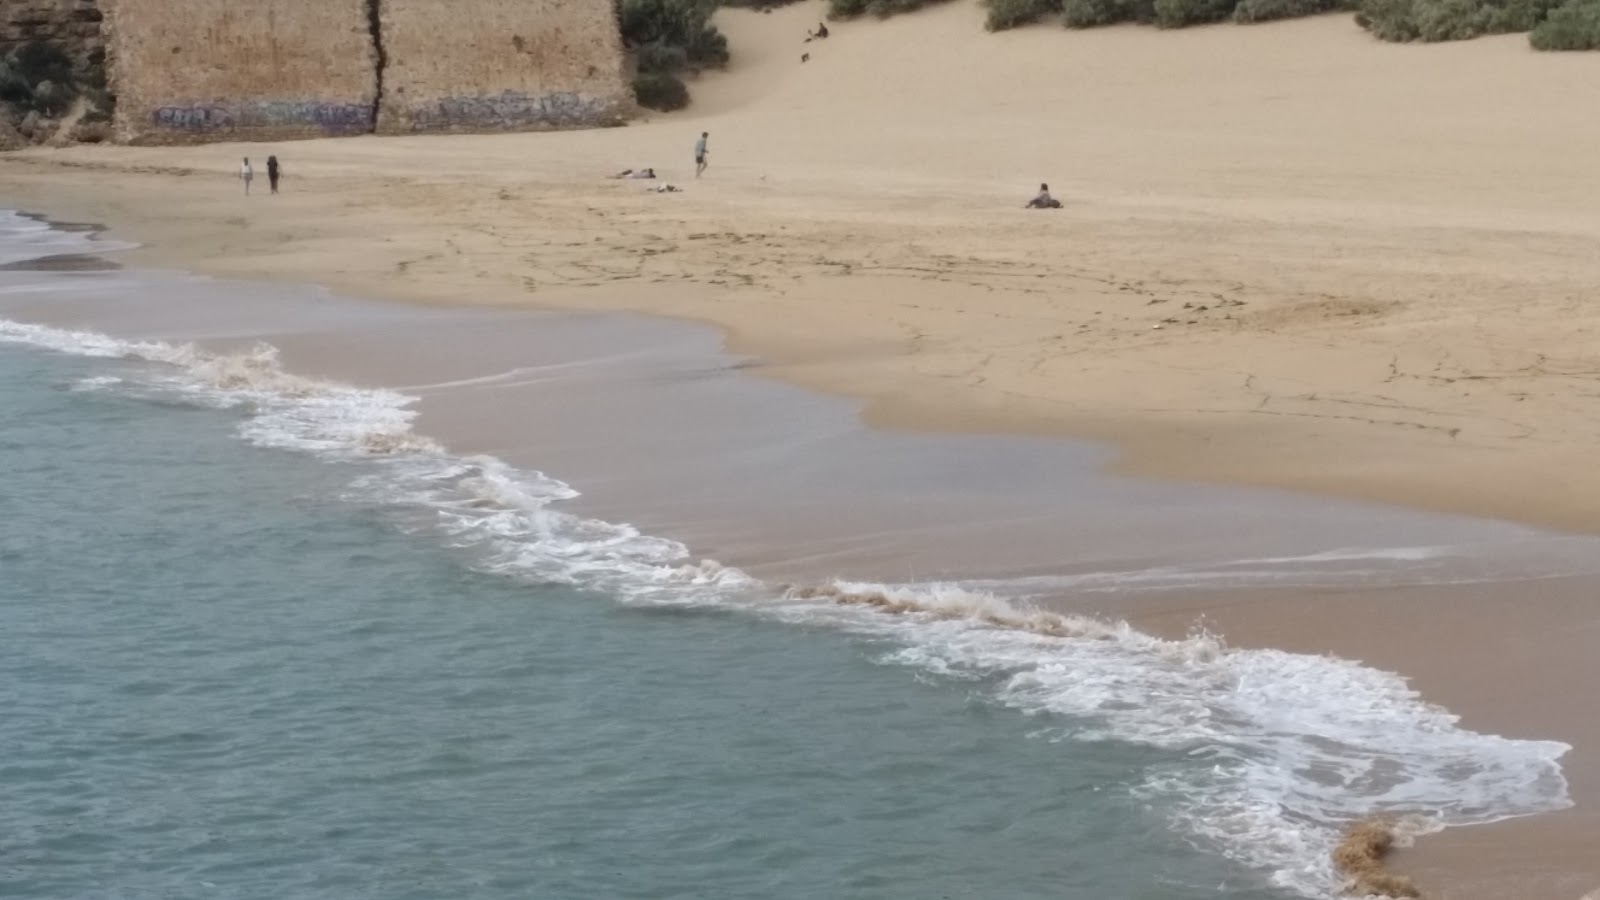 Playa de la Muralla'in fotoğrafı çok temiz temizlik seviyesi ile